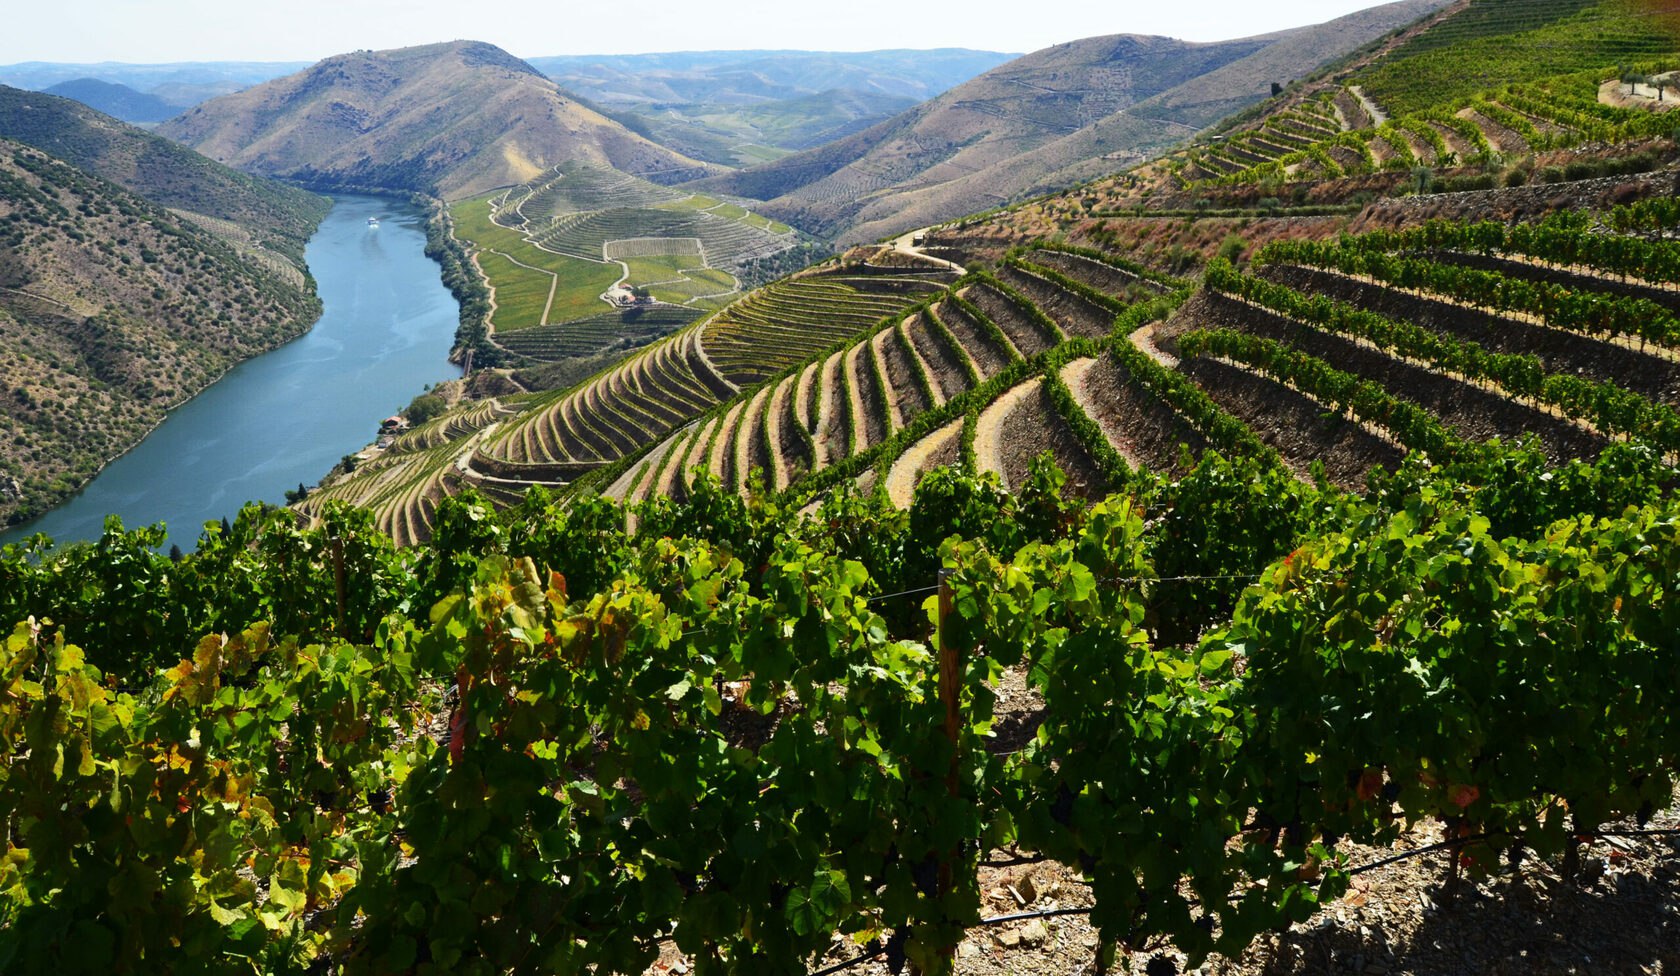 Vina gormaz. Дору Португалия винодельческий регион. Долина реки Дору Португалия. Португалия виноградники Дору. Винью Верде Португалия винодельческий регион.